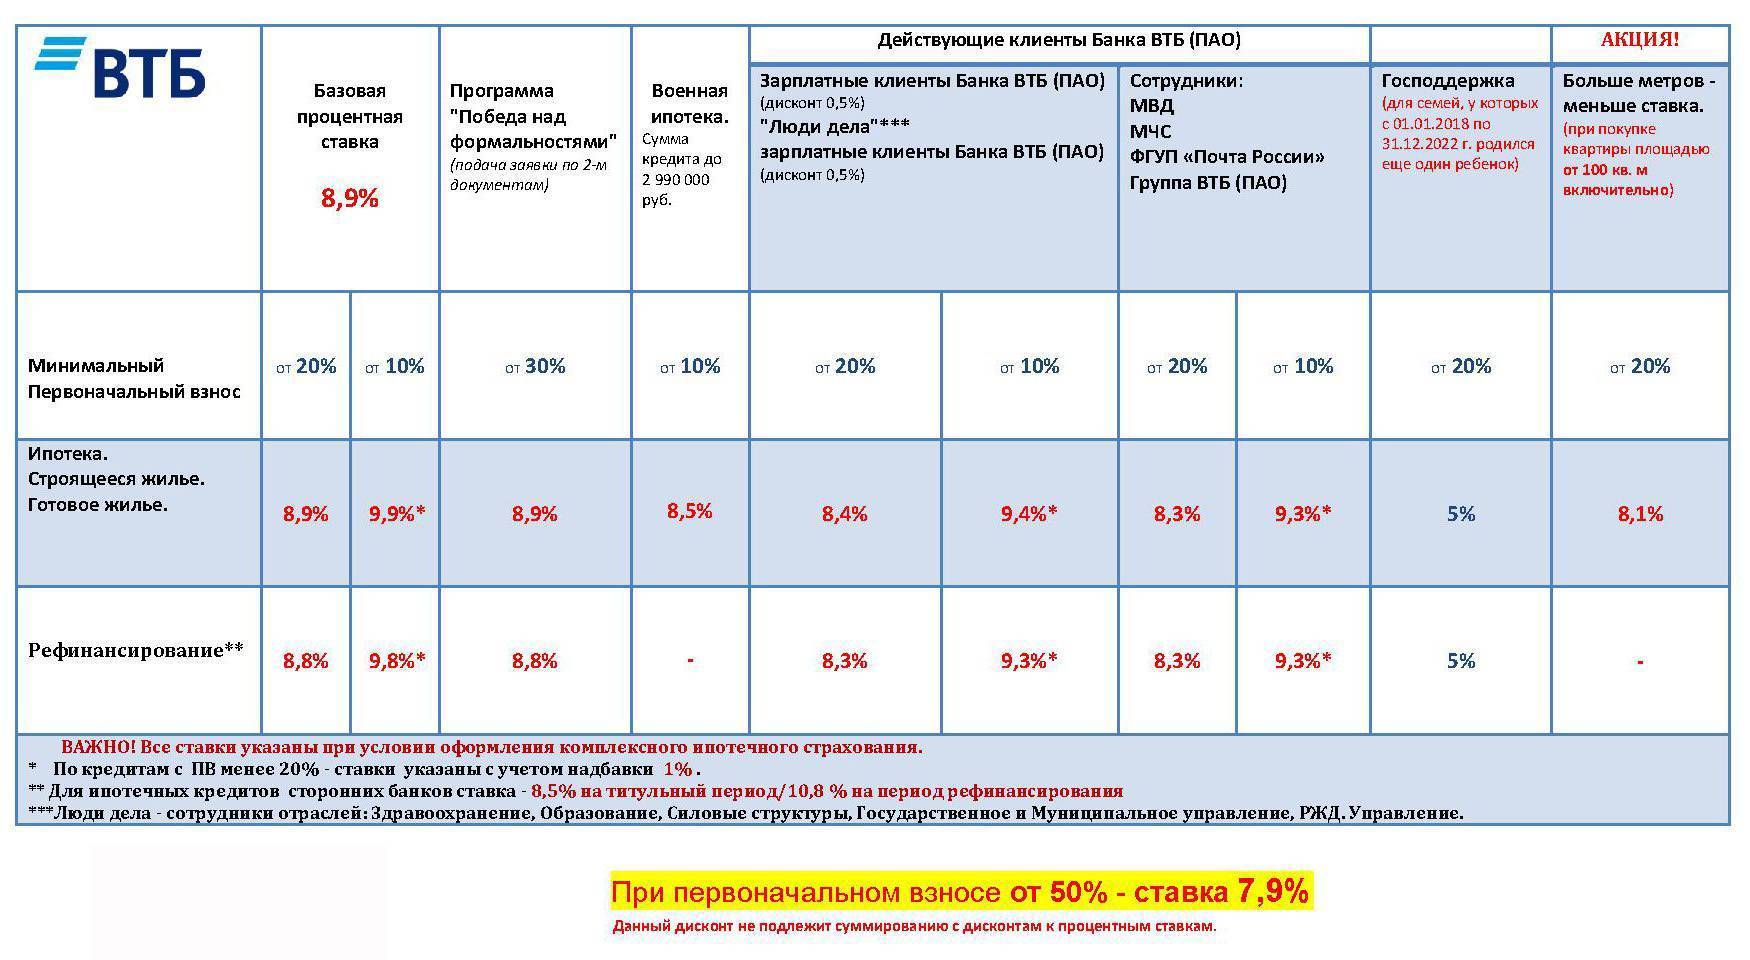 Ипотечный кредит господдержка 2020 в втб под 5.75 на срок от 1 до 30 лет в рублях | банки.ру